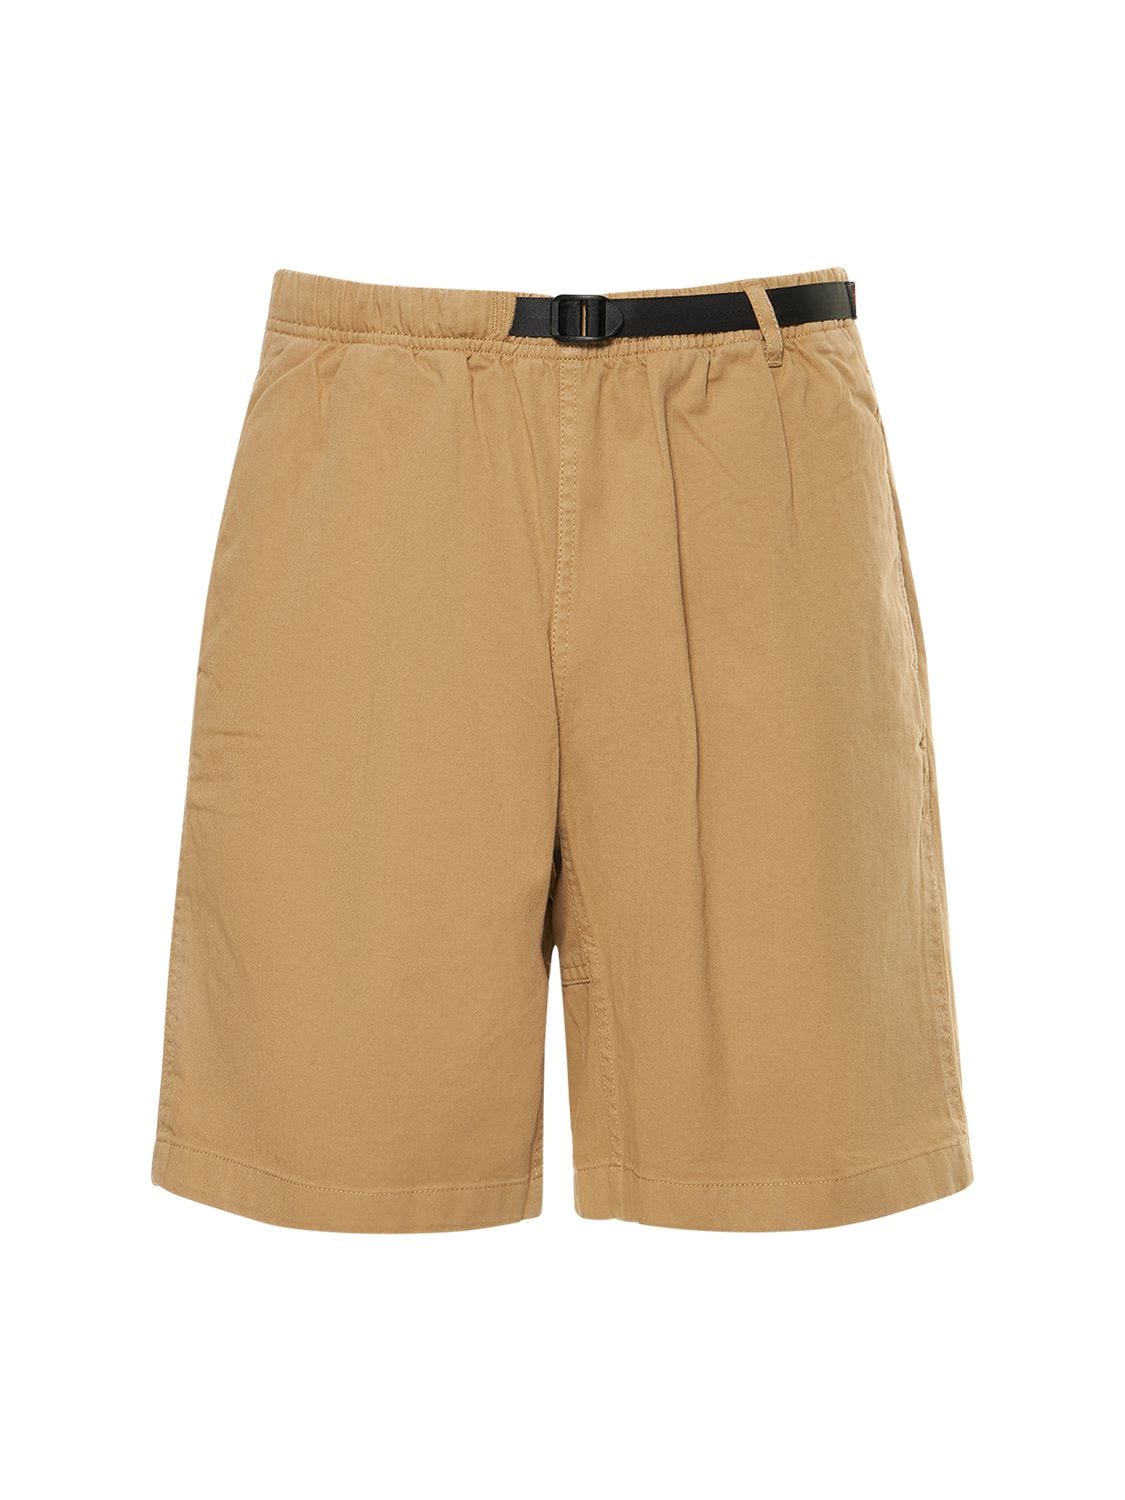 G-short Organic Cotton Shorts – MEN > CLOTHING > SHORTS